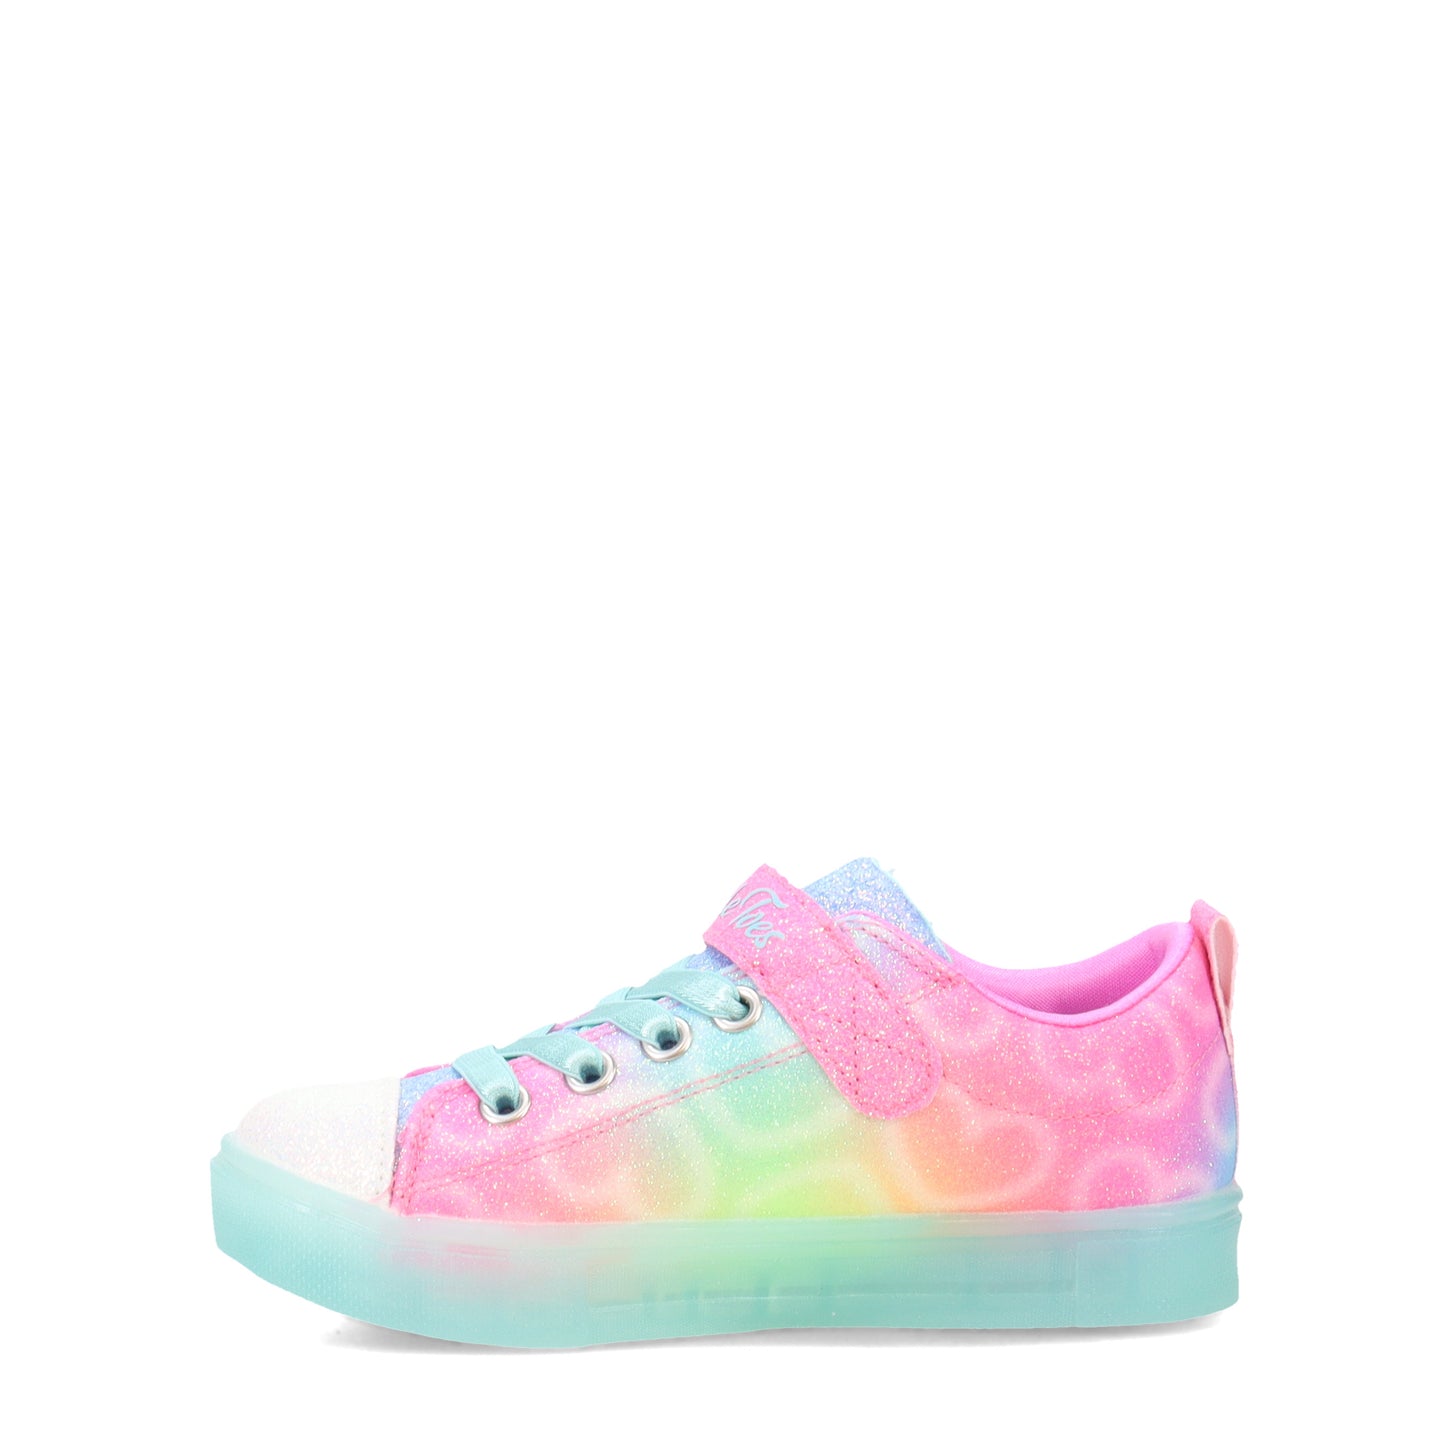 Peltz Shoes  Girl's Skechers Twinkle Sparks Ice - Dreamsicle Sneaker - Little Kid MULTI FABRIC 314782L-MLT